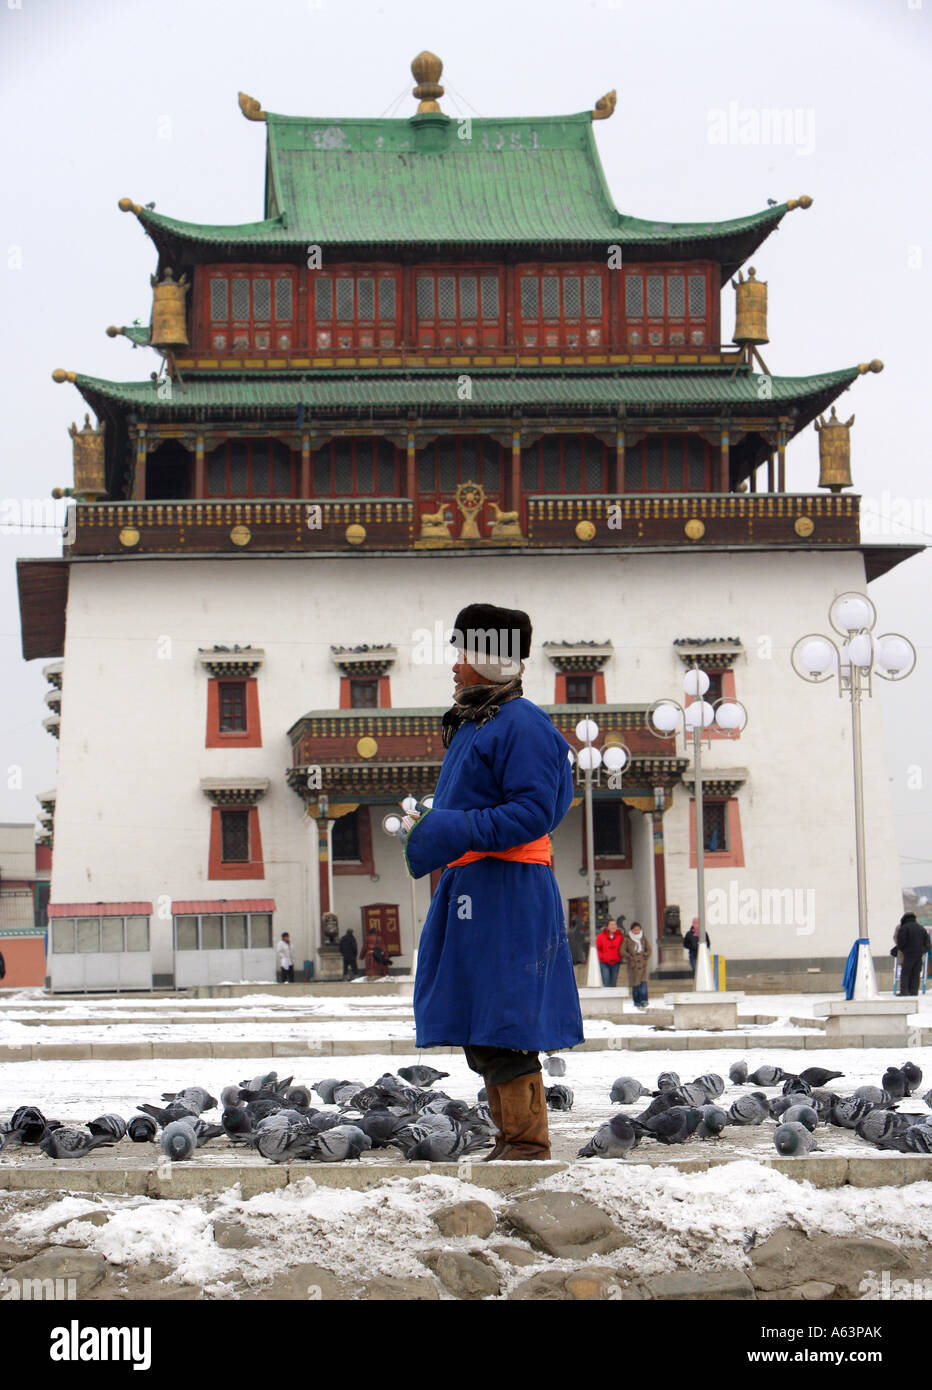 Mongolie - Gandan monastère bouddhiste à Ulaan Bataar Banque D'Images